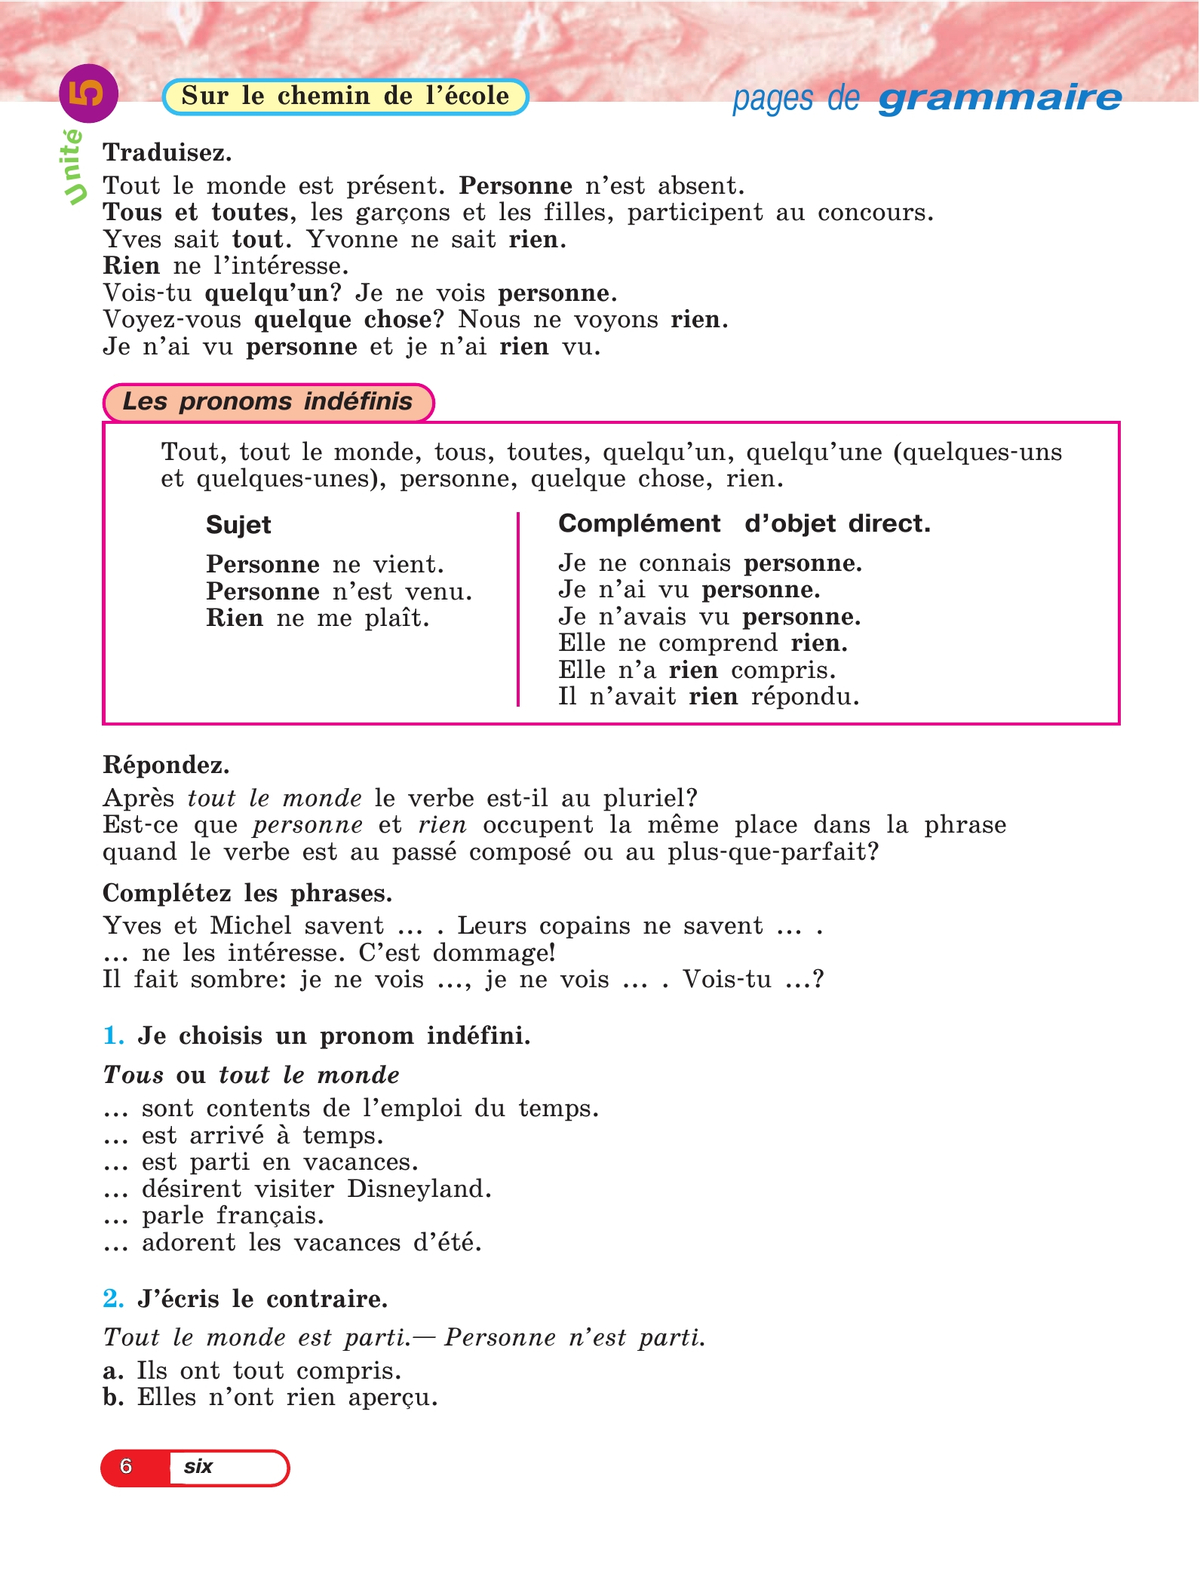 Французский язык. 5 класс. Углублённый уровень. Учебник. В 2 ч. Часть 2. 7